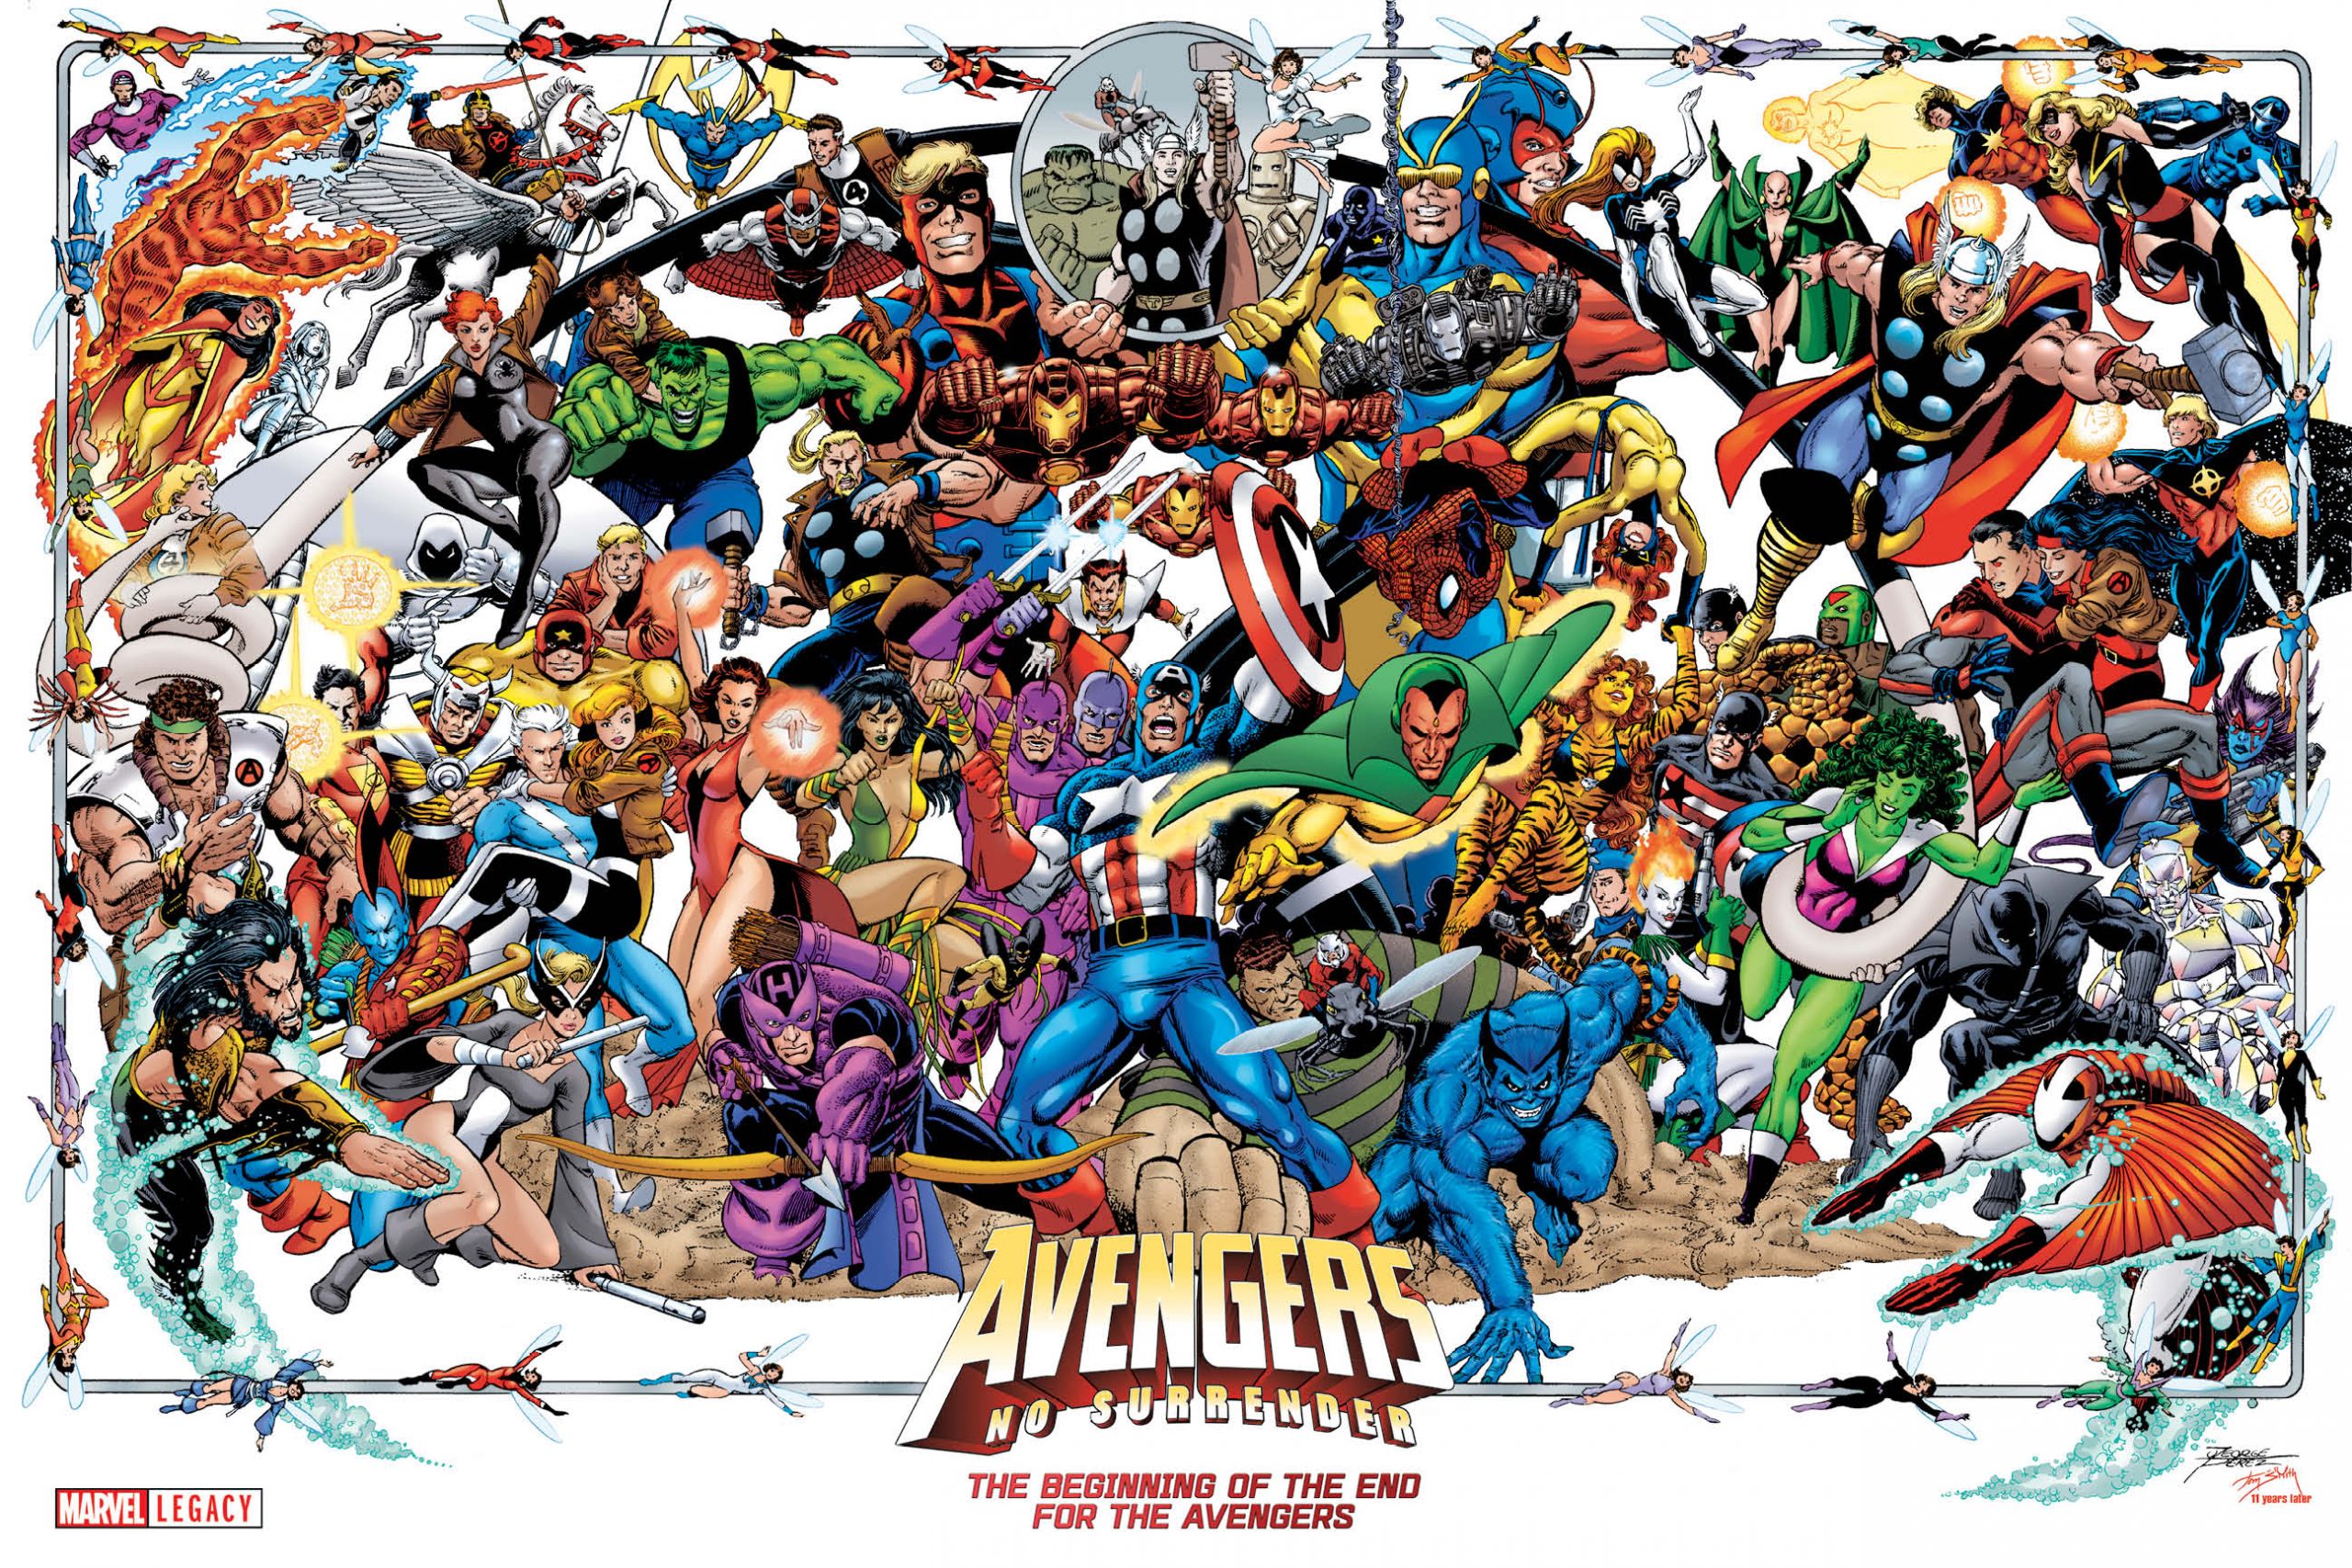 George Pérez - Avengers - Poster - Vingadores - www.farofeiros.com.br